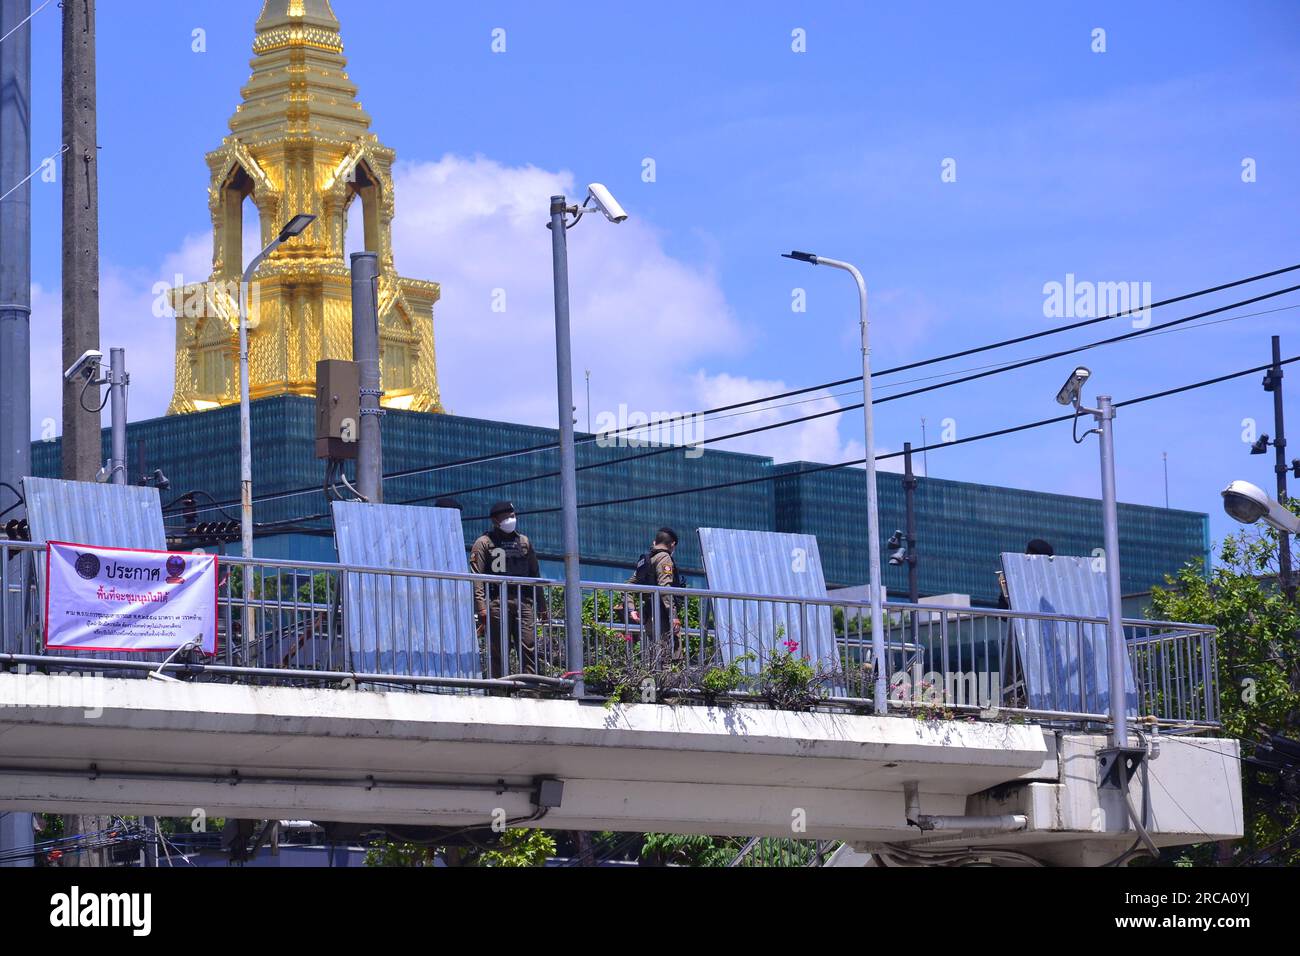 Das Parlamentsgebäude in Bangkok, Thailand, wird von Polizeibeamten geschützt, die auf einem Fußweg mit Barrieren stehen, Stunden vor einem Protest demokratiefreundlicher Anhänger der Move Forward Party. Das thailändische Parlament stimmt am 13. Juli ab, um zu entscheiden, ob die Anführerin der Partei Move Forward, Pita Limjaroenrat, die bei den Wahlen im Mai die meisten Sitze gewonnen hat, die neue Premierministerin werden kann. Pita Limjaroenrat verlor die Wahl zum Premierminister, 51 Stimmen weniger als 376 Stimmen. Stockfoto